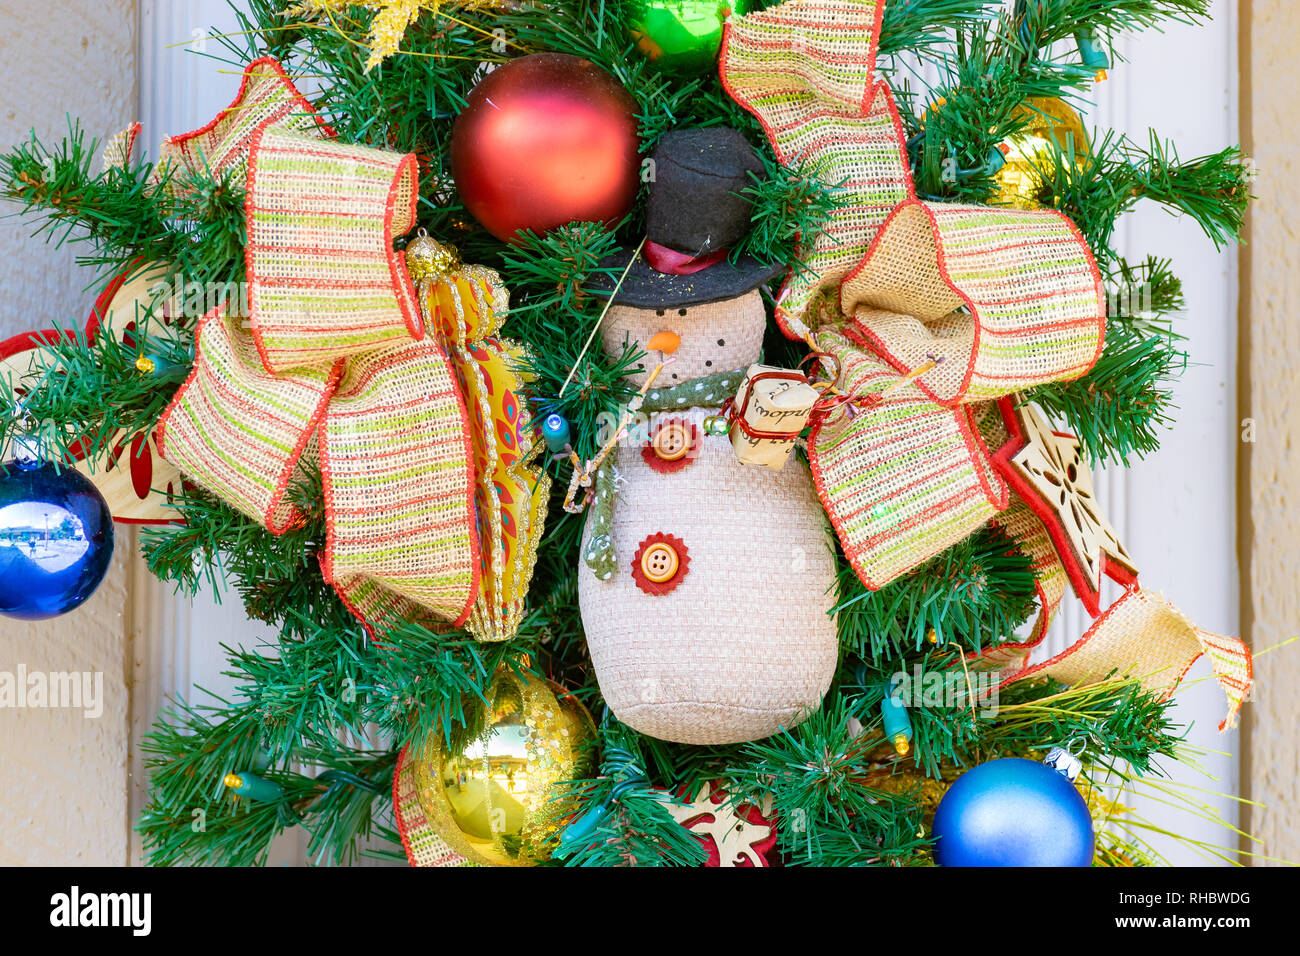 Weihnachten Winter Dezember Urlaub Dekor. Tür Kranz mit bunten Bändern, glänzendes Metall dekorative Kugeln und einen Schneemann Teddybär. Stockfoto